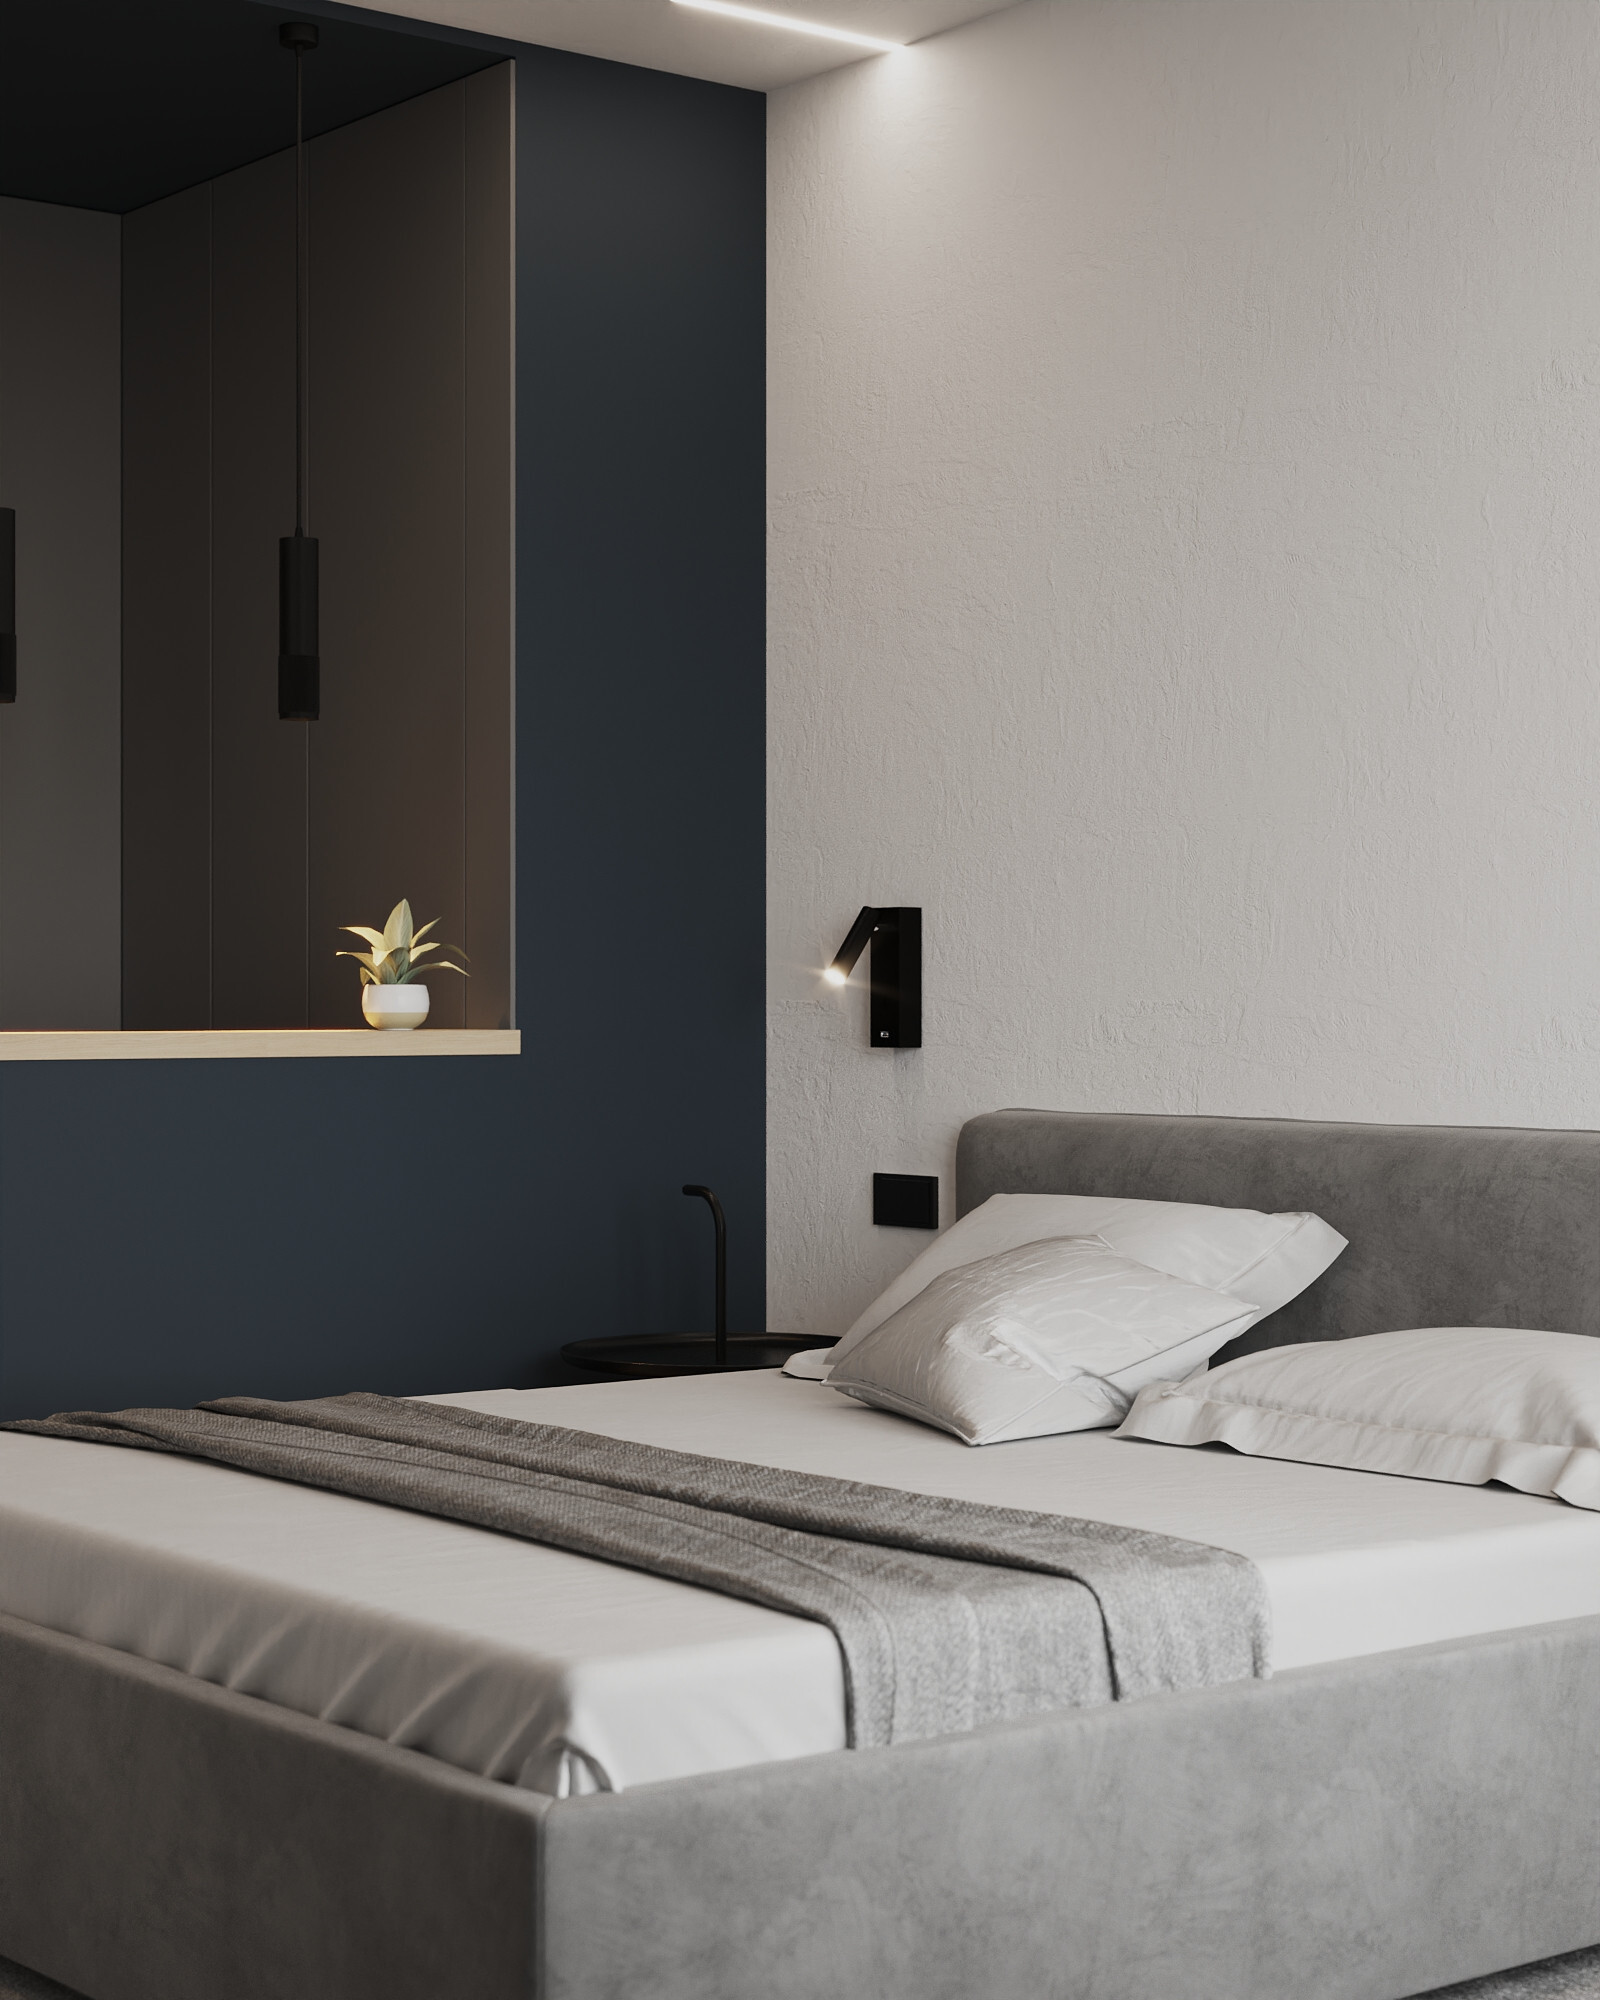 Интерьер спальни с бра над кроватью, подсветкой настенной и светильниками над кроватью в современном стиле